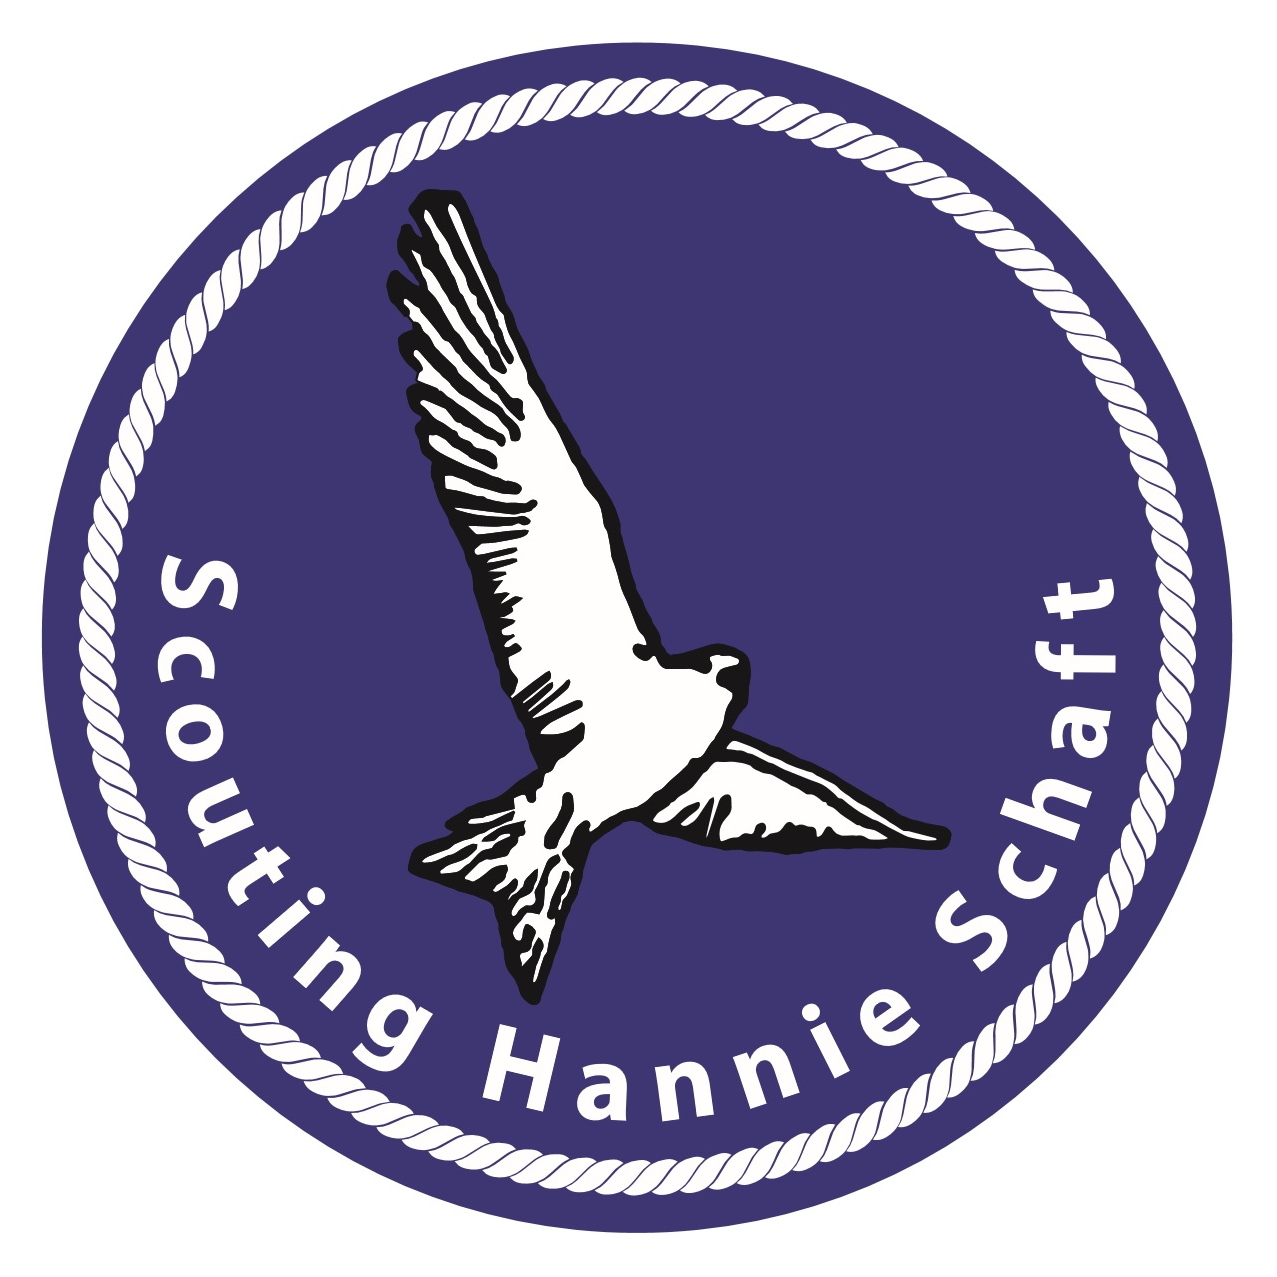 Scouting Hannie Schaft groep